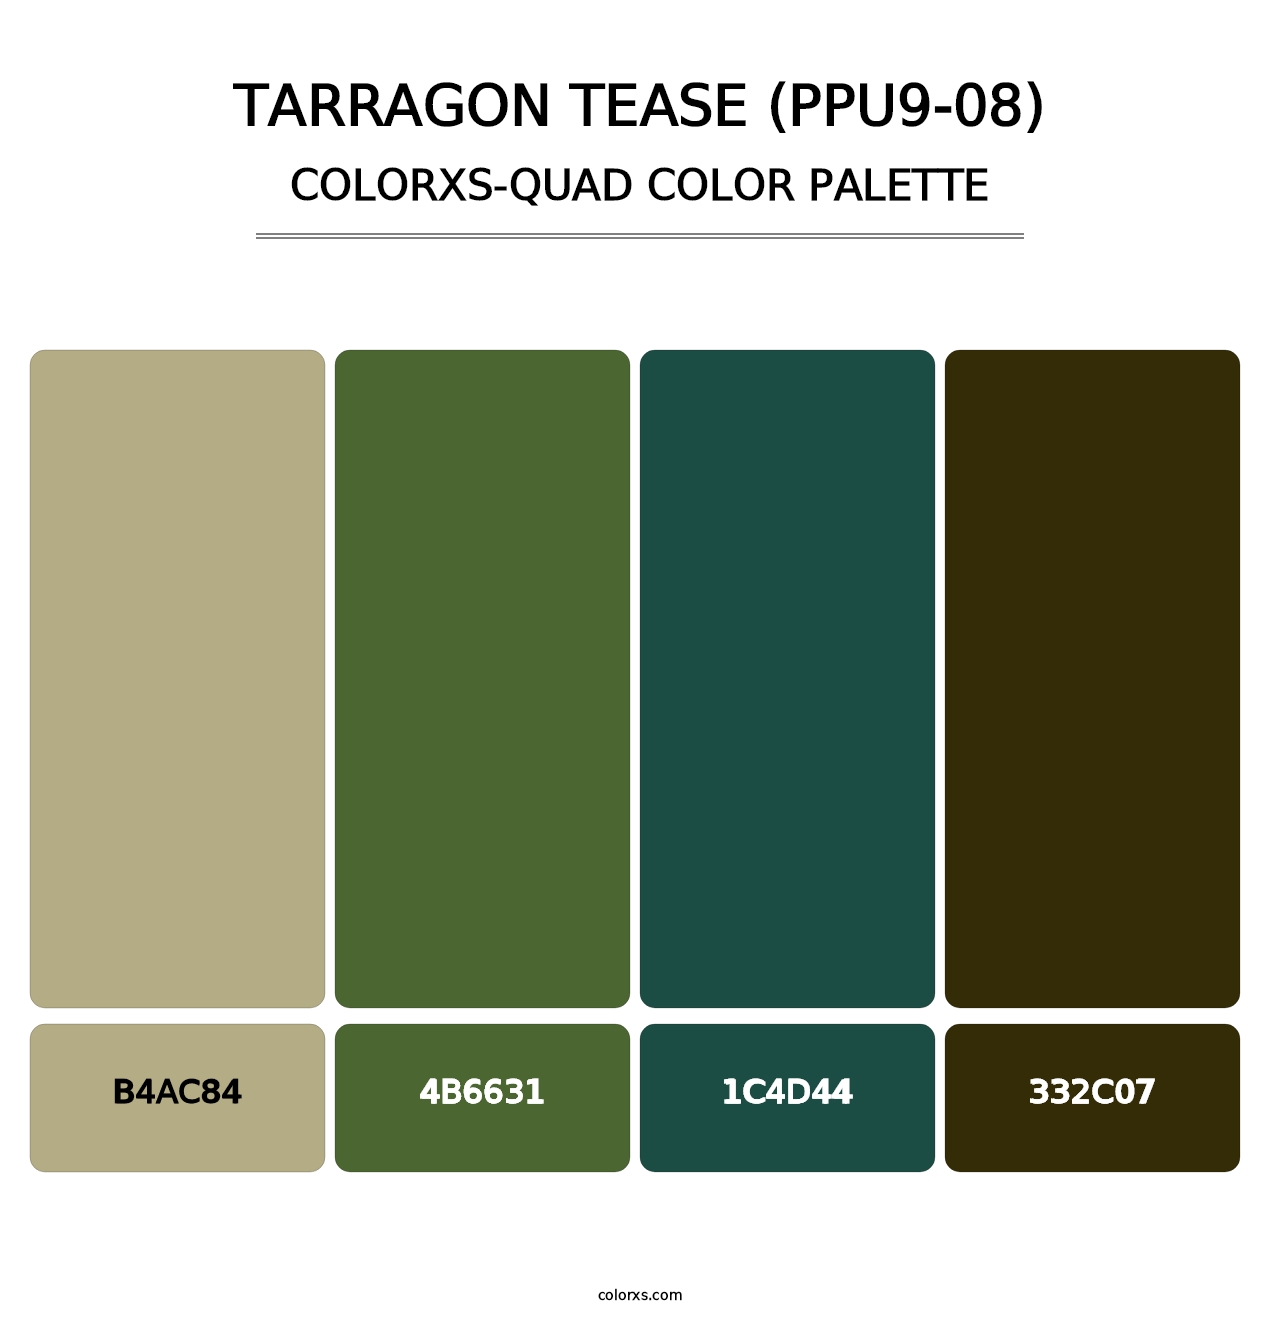 Tarragon Tease (PPU9-08) - Colorxs Quad Palette